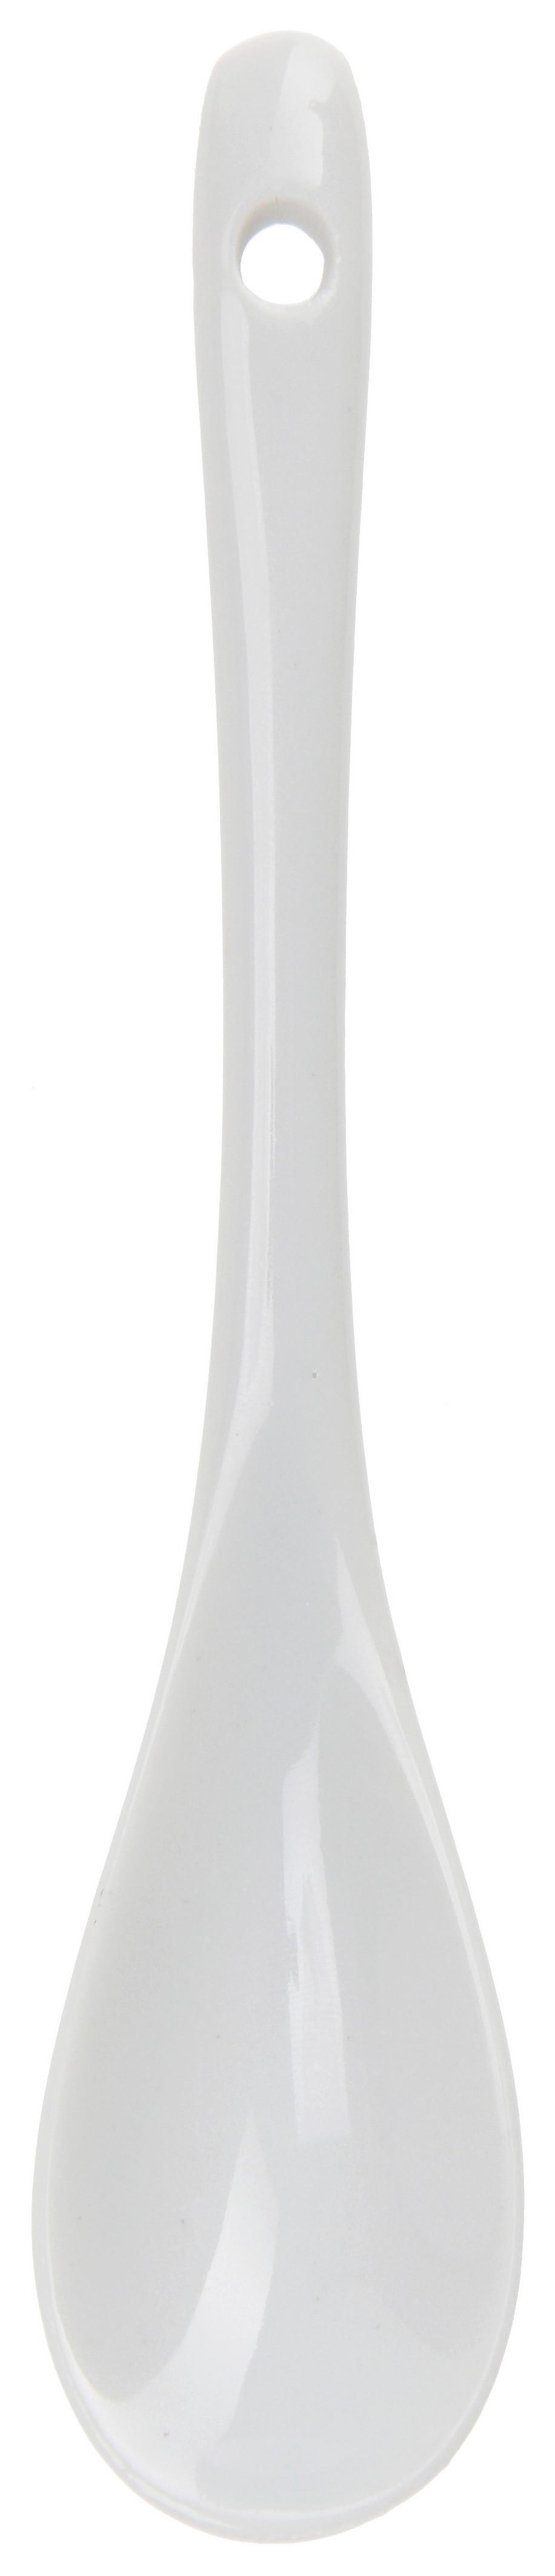 Eierbecherset Fitore S. in Weiß, 8-teilig - Weiß, KONVENTIONELL, Keramik (5.2/6cm)